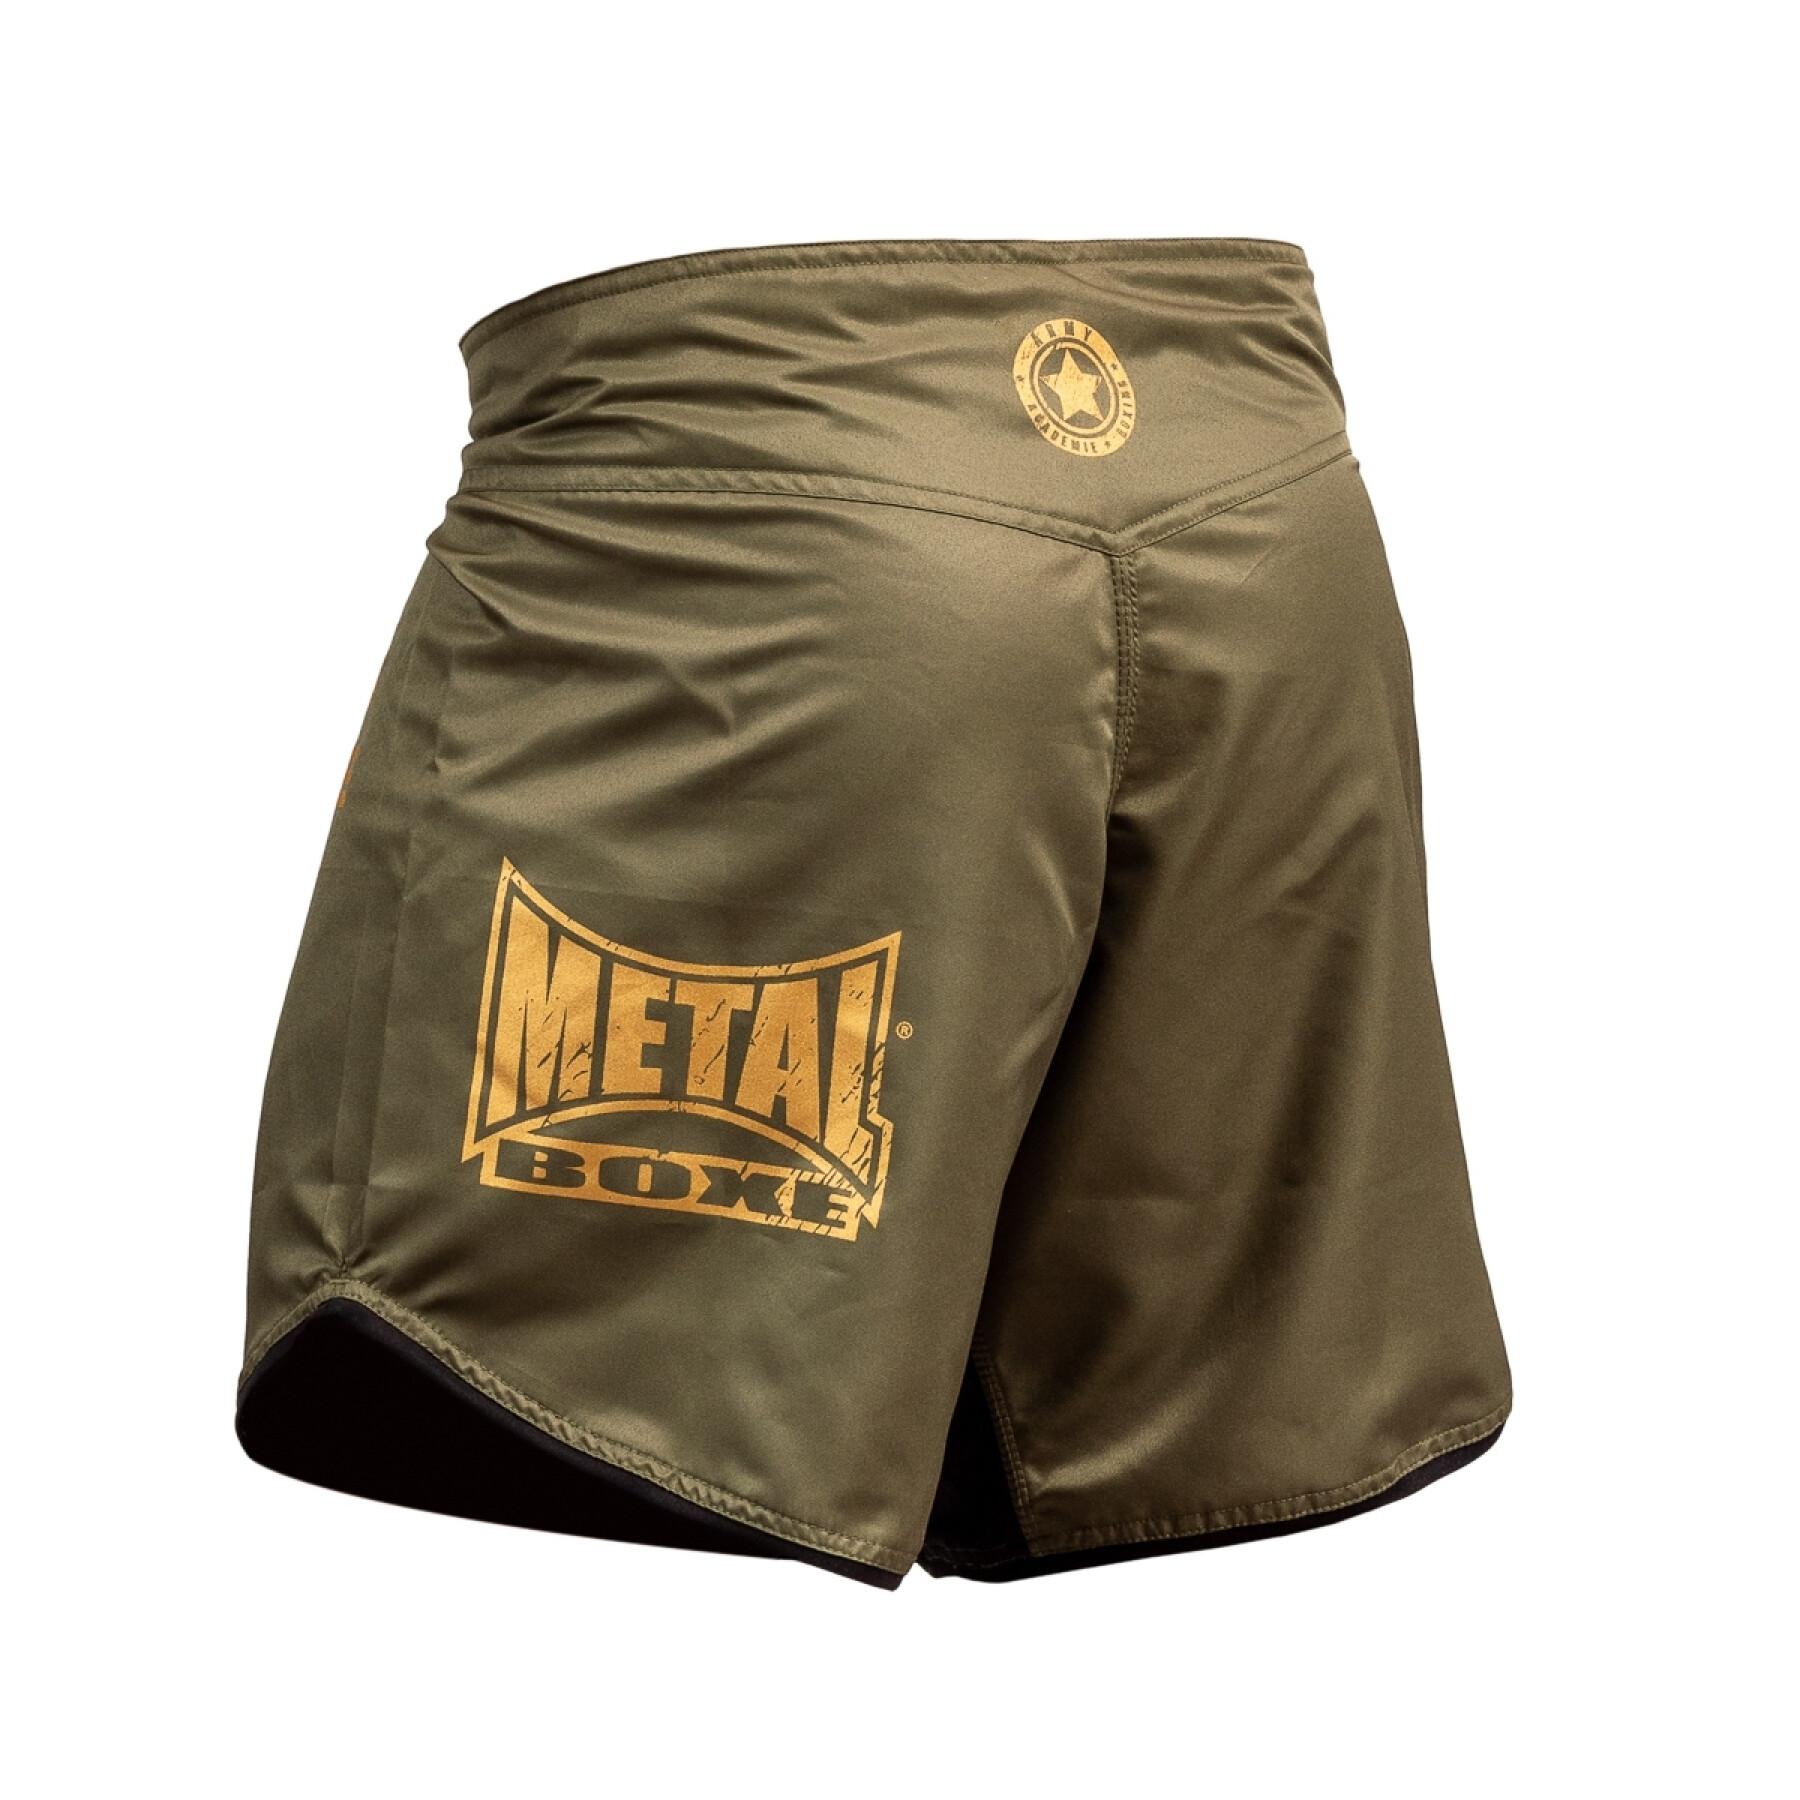 calções MMA Metal Boxe